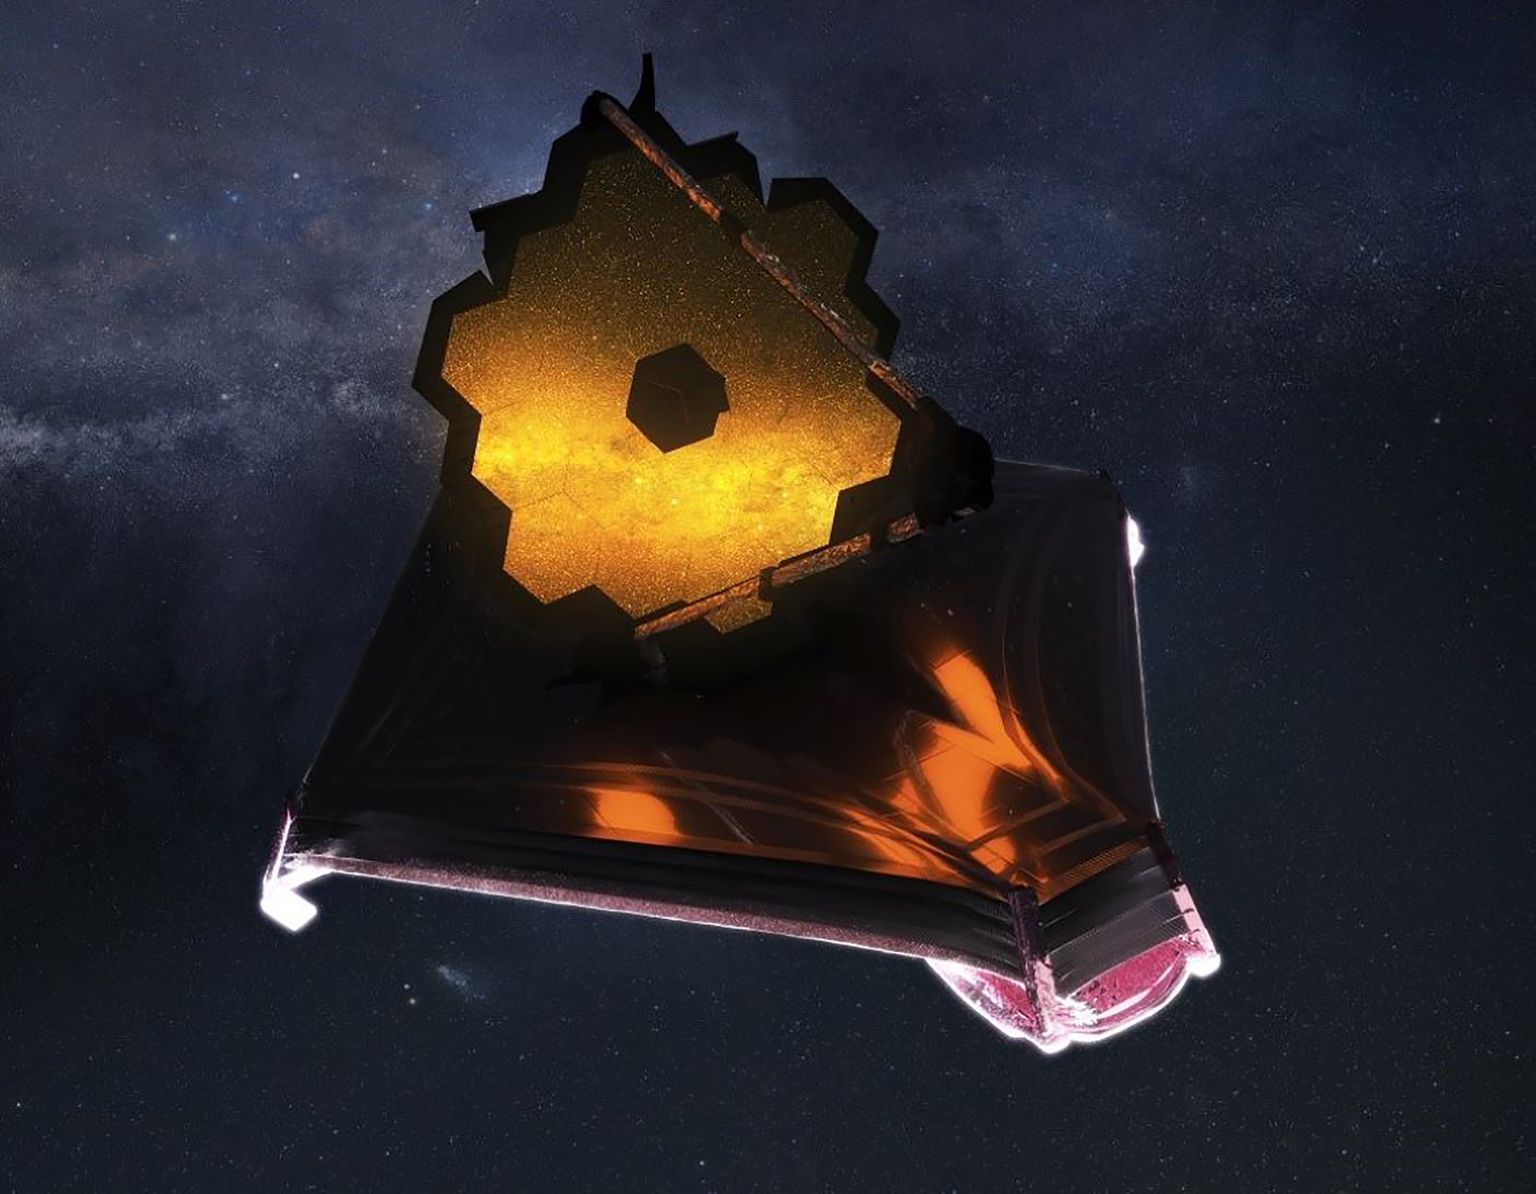 NASA kunstniku Adriana Manrique Gutierrezi arvutijoonistus James Webbi kosmosetelekoobist töökorras olekus